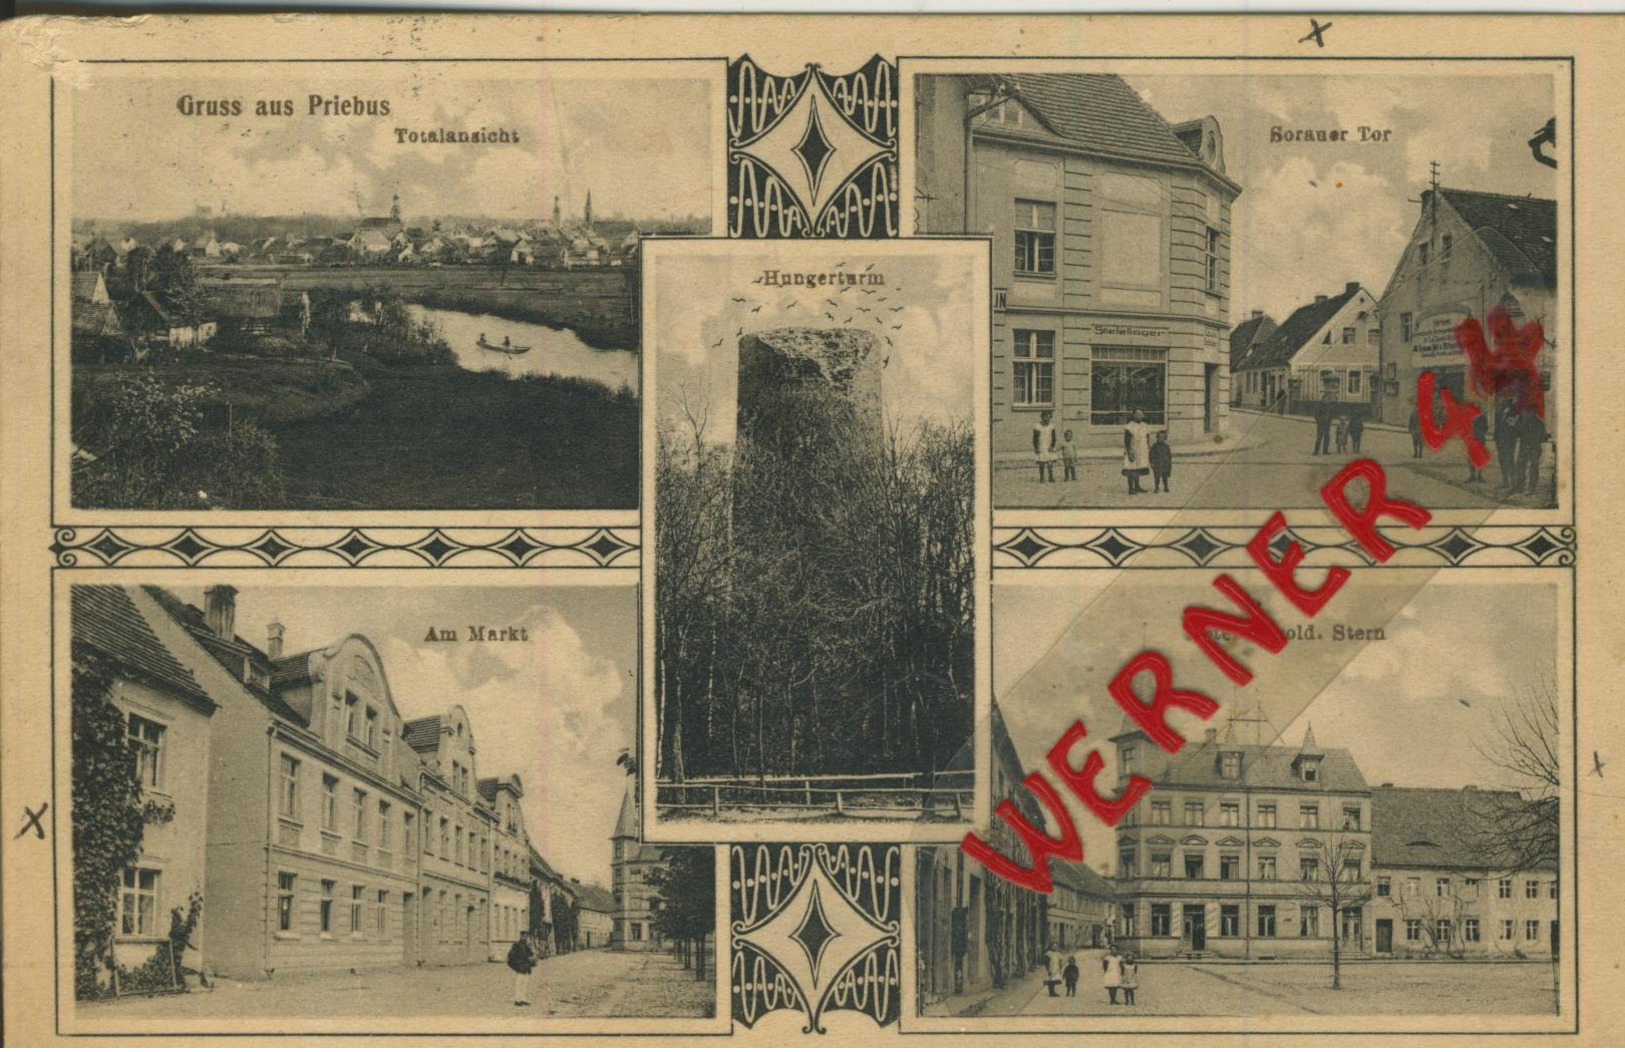 Priebus = Przewóz V. 1912 Totalansicht,Borauer Tor,Am Markt,Hotel Zum Goldenen Stern,Hungerturm  (50664) - Schlesien